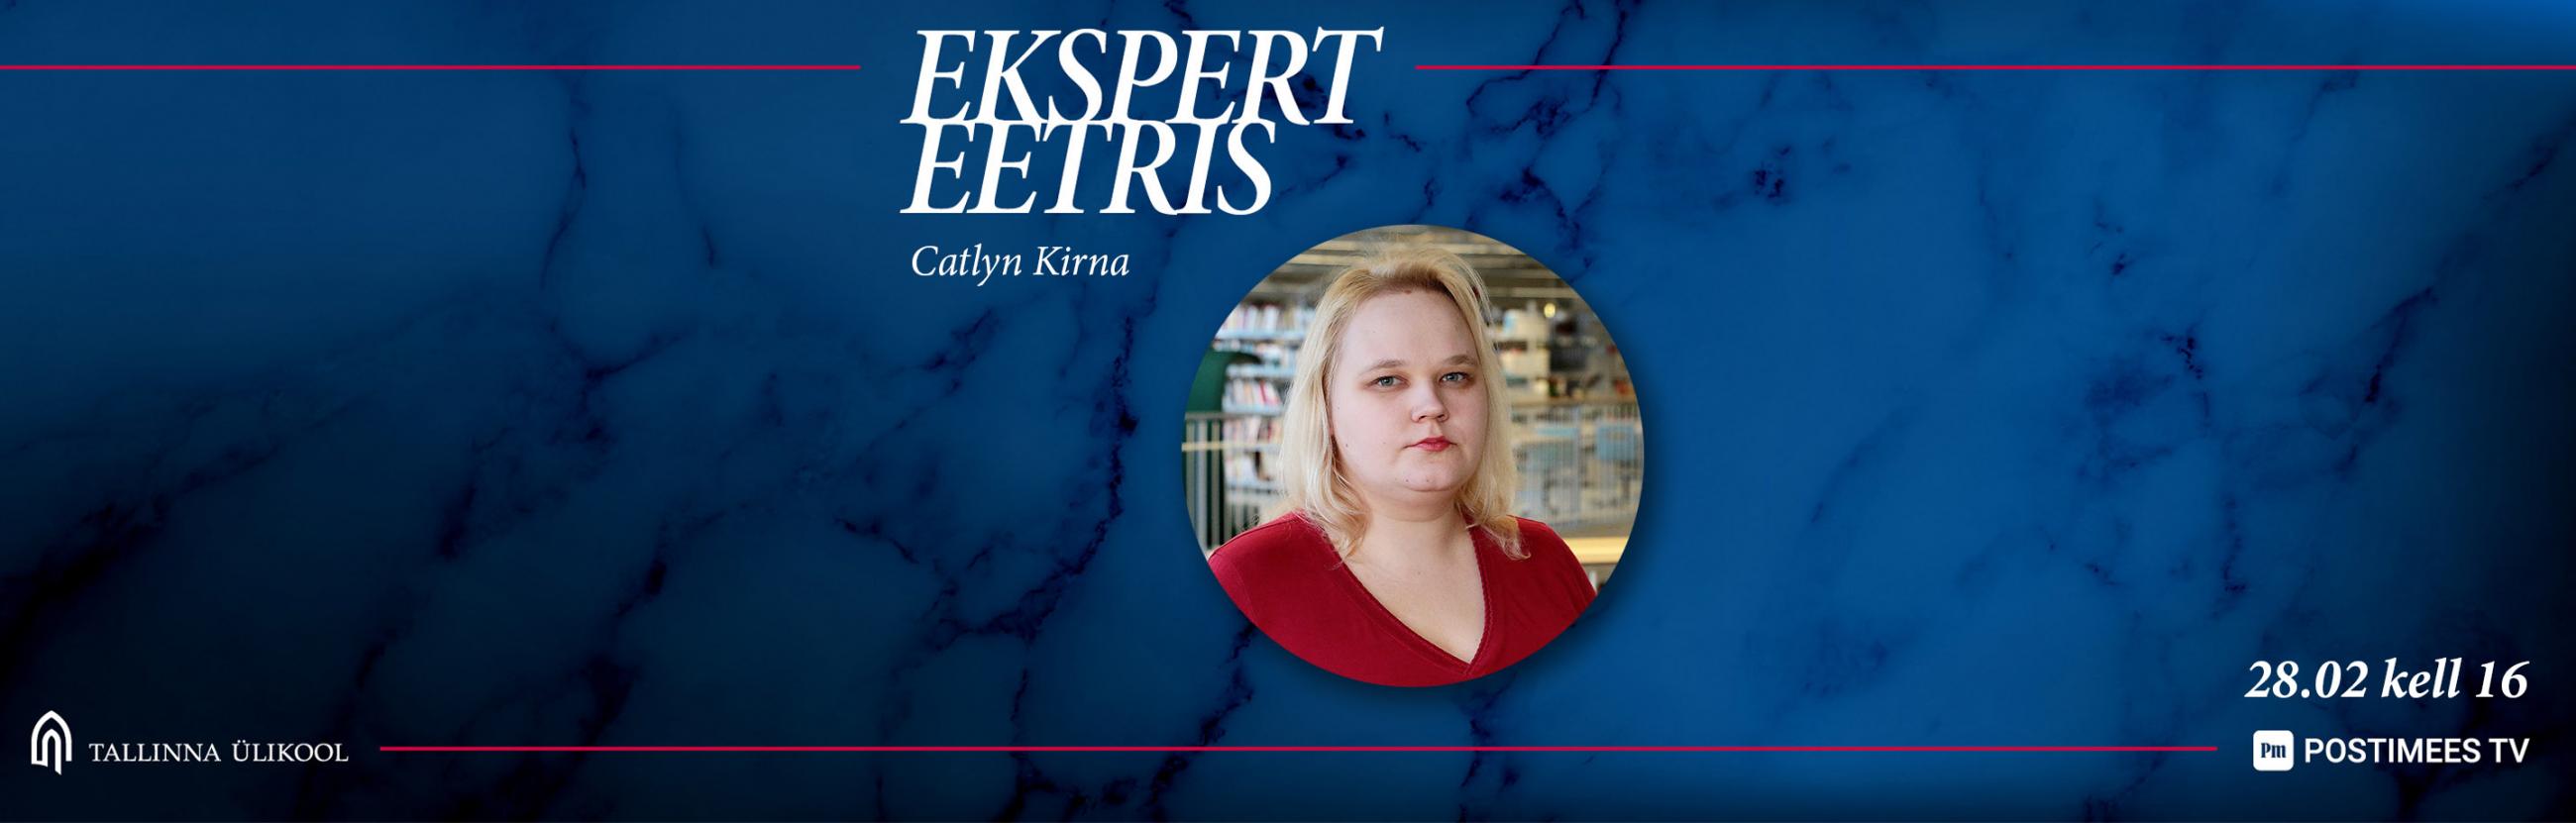 Catlyn Kirna